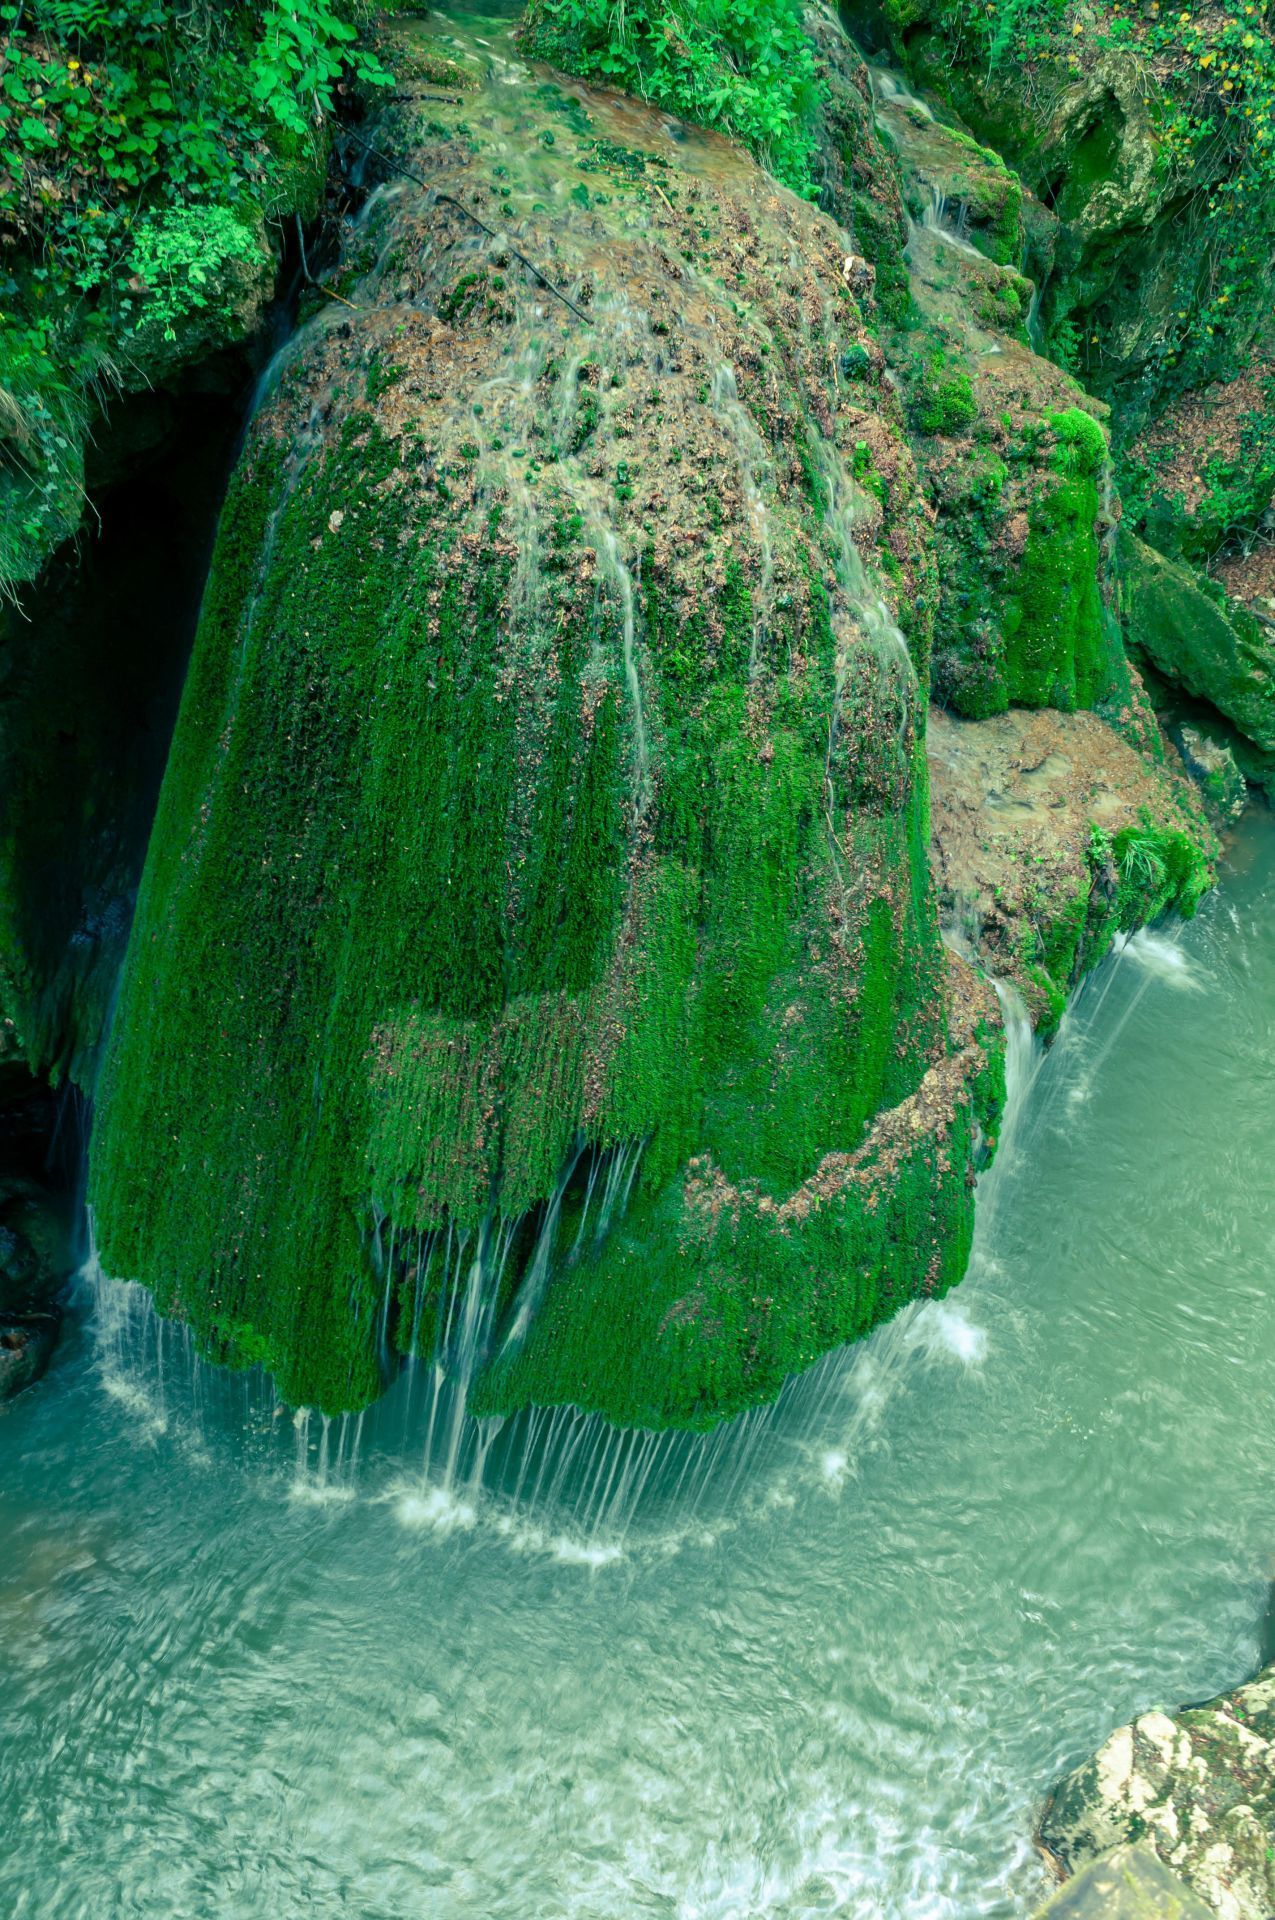 Durch das Wasser, das die mit Moos bewachsenen Felsen hinabfließt, zählt der Bigar Wasserfall im Westen Rumäniens zu den spektakulärsten Wasserfällen der Welt.